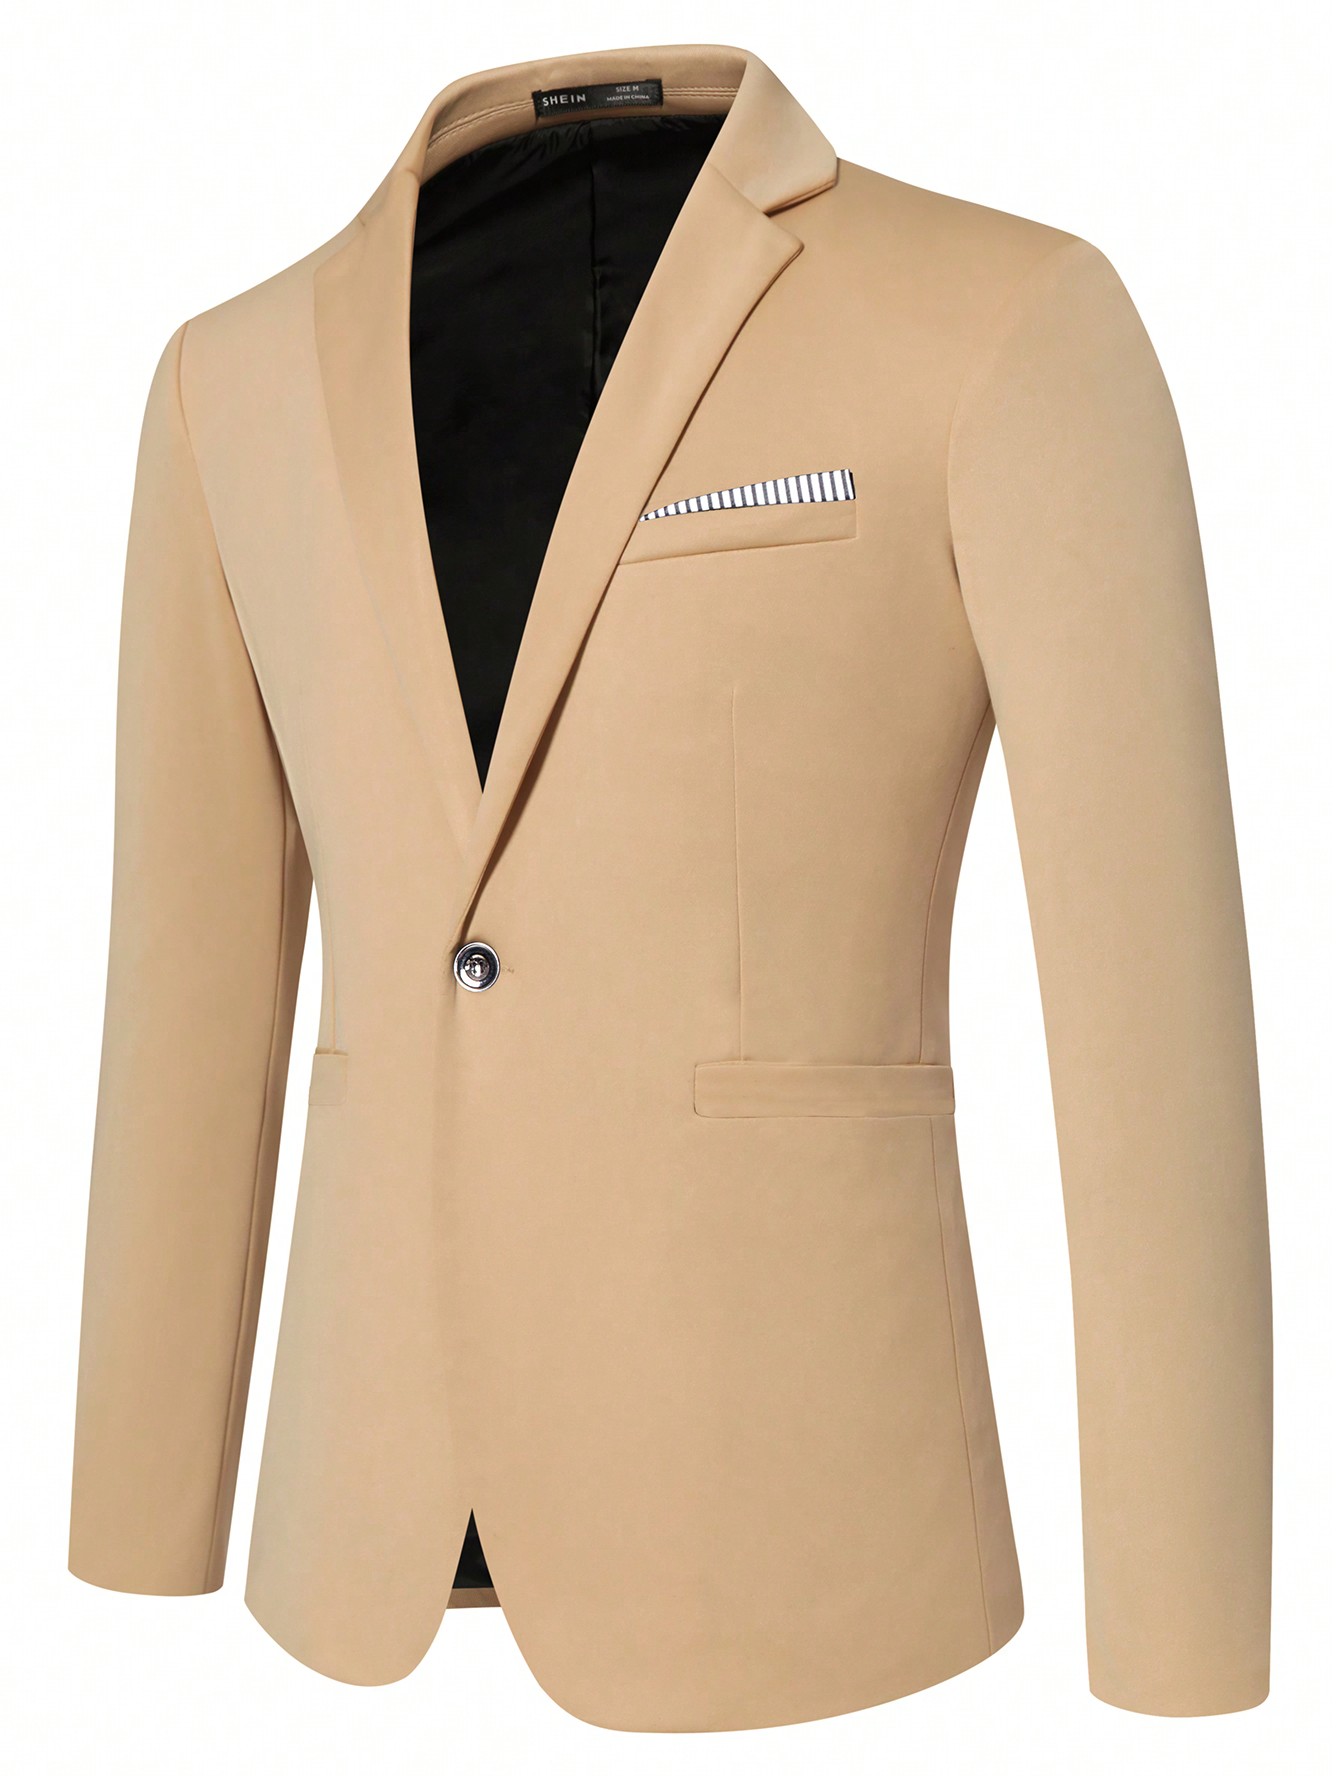 Мужской пиджак с длинными рукавами и зубчатыми лацканами Manfinity Mode, хаки мужской однотонный костюм с воротником стойкой manfinity mode черный